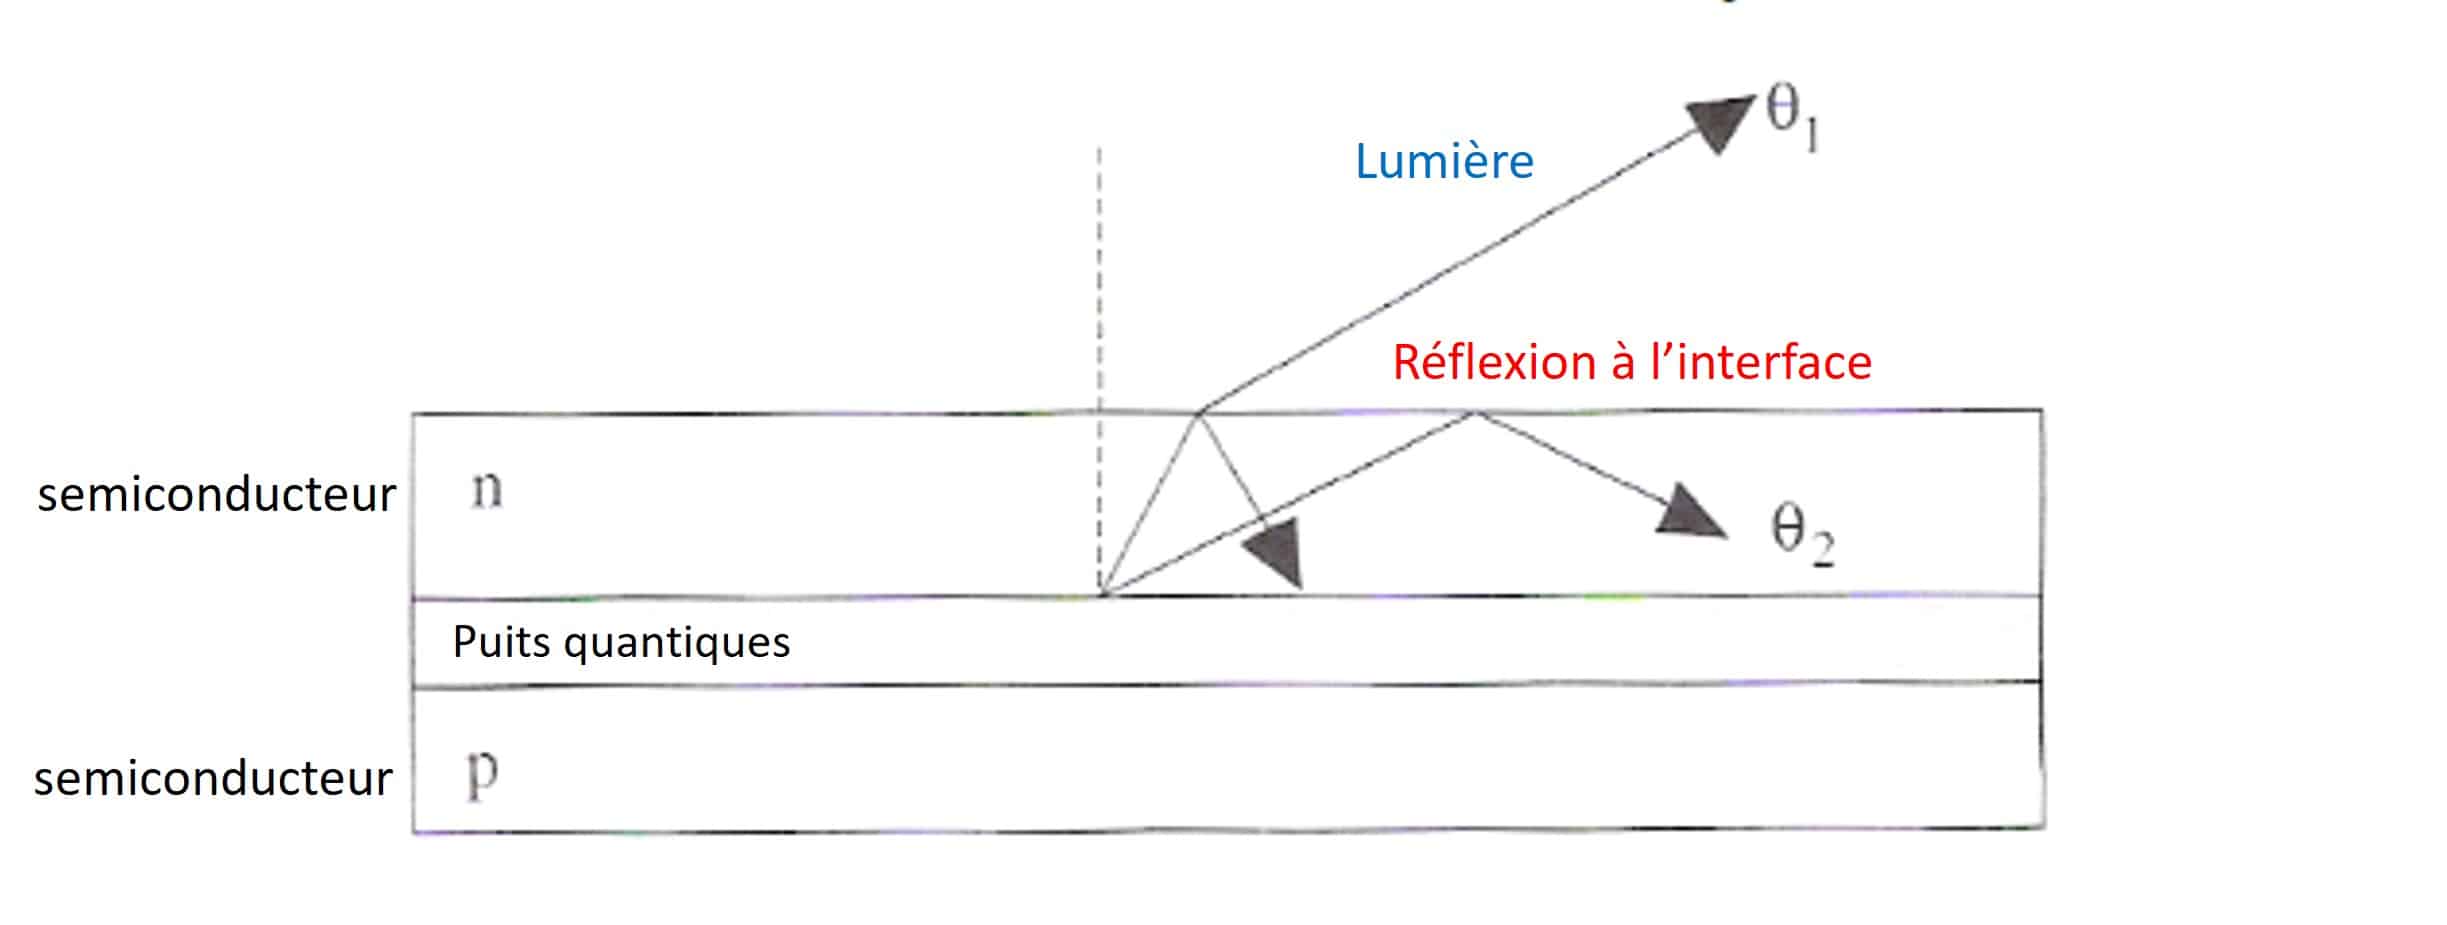 efficacité energétique LED - rendement quantique externe